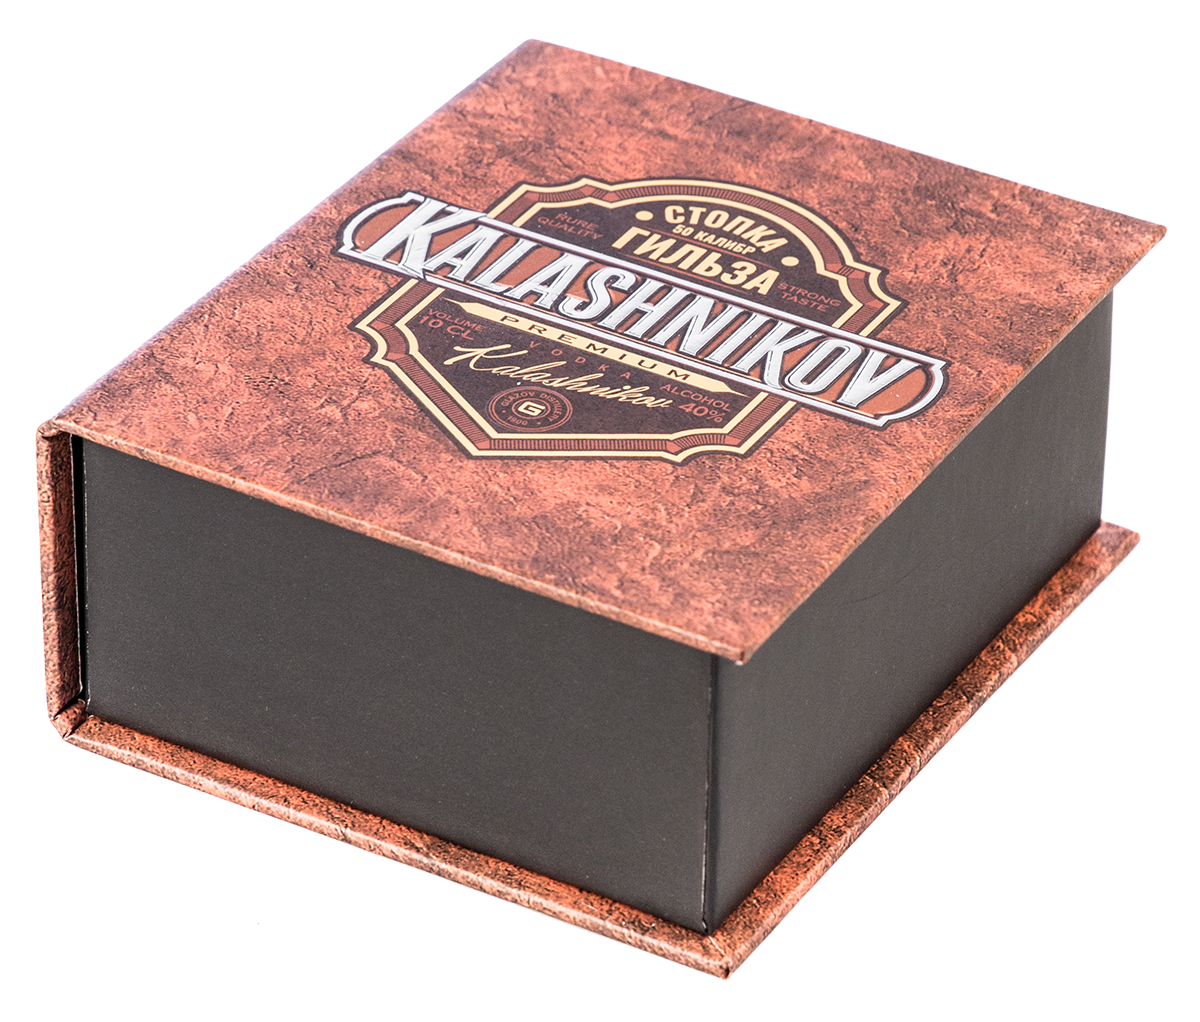 Коробка-книжка с флокированным ложементом "Kalashnikov", 125*150*60 мм